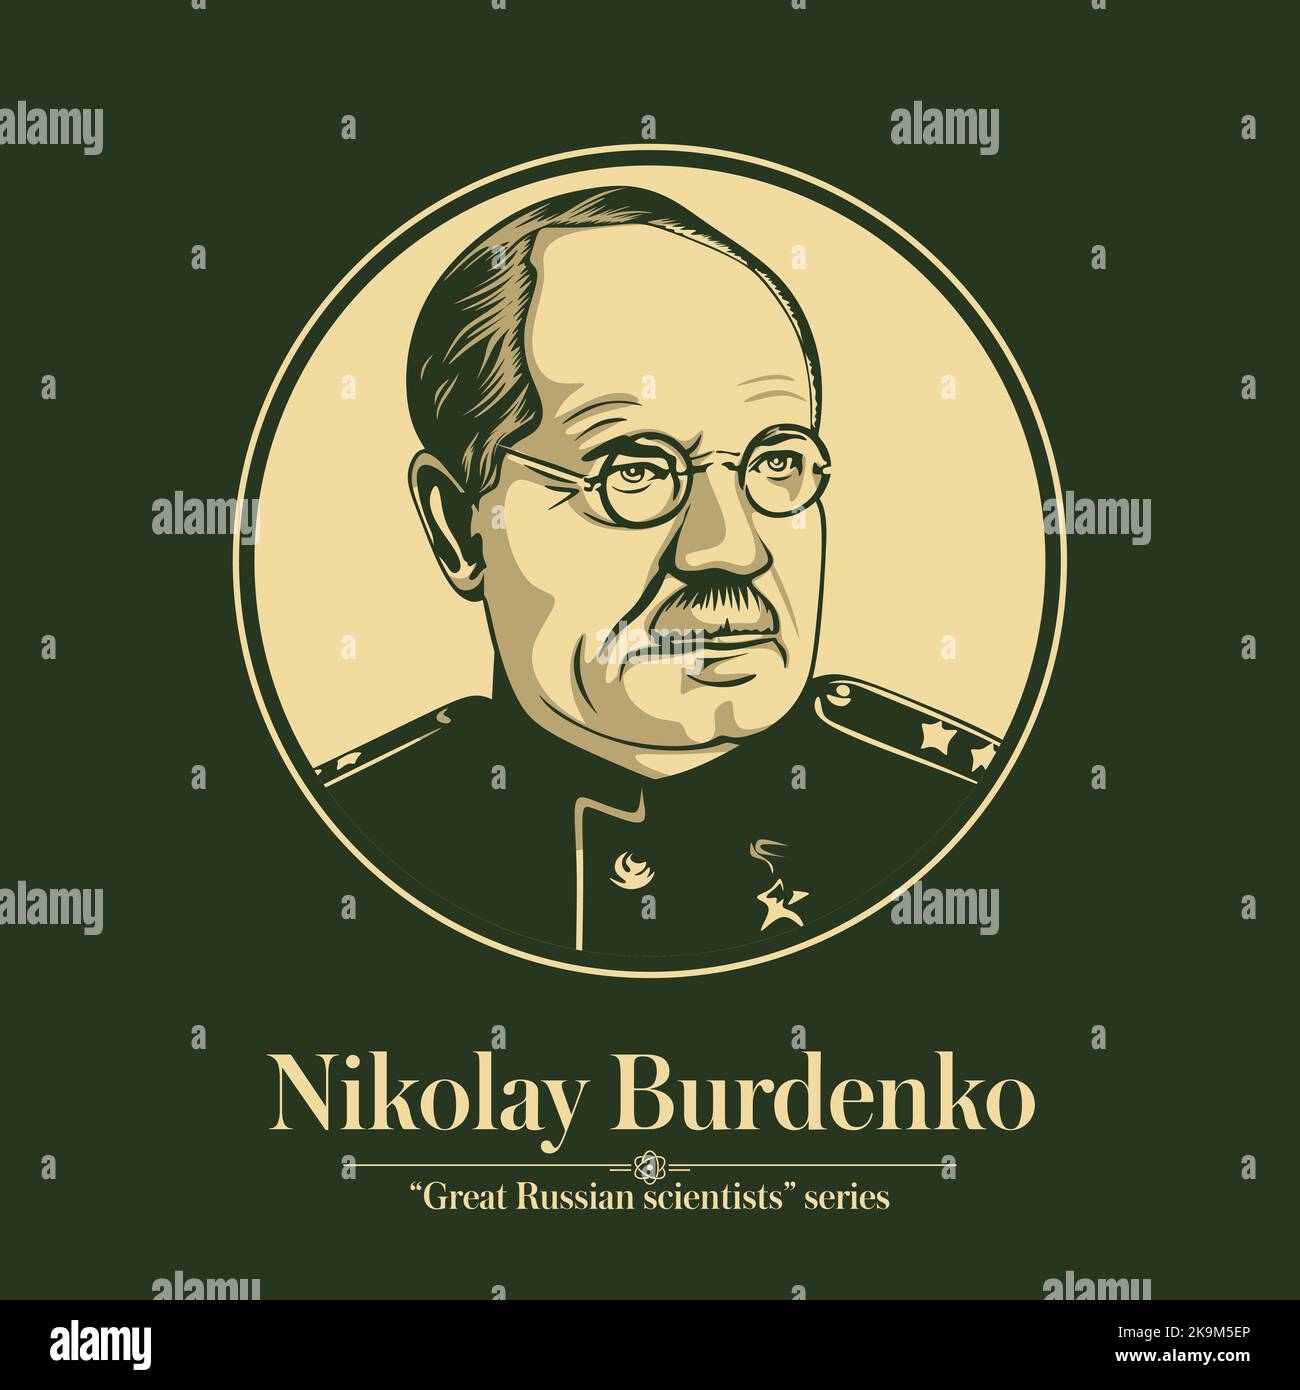 La série des grands scientifiques russes. Nikolay Burdenko était un empire russe et chirurgien soviétique, le fondateur de la neurochirurgie russe. Illustration de Vecteur